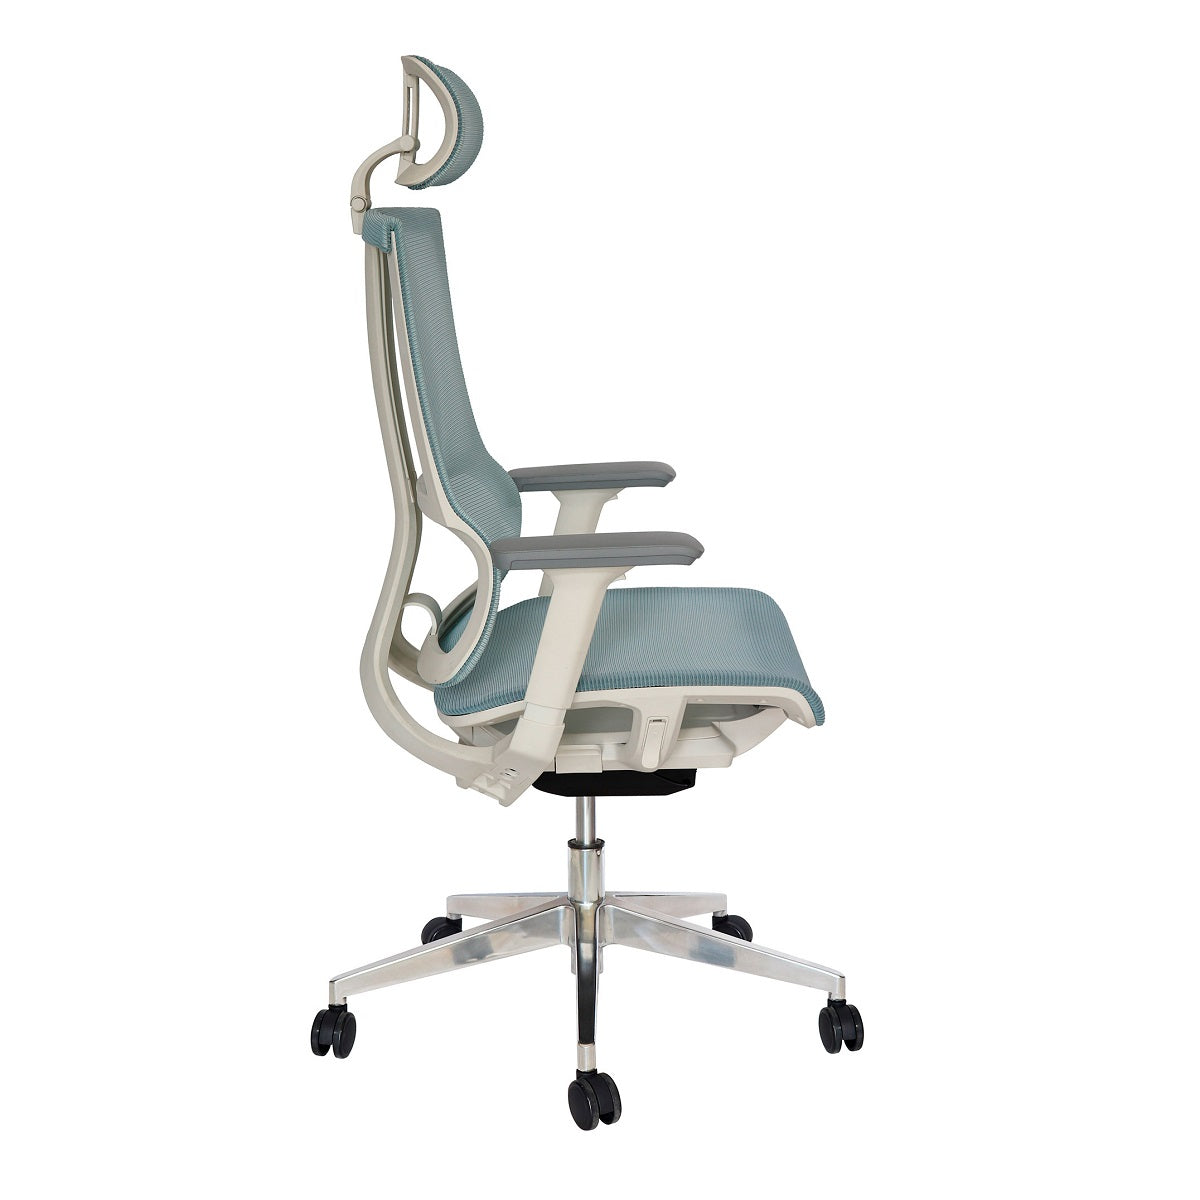 Sillón ejecutivo Dillon OHE-35 respaldo y asiento tapizado en malla blanca con base aluminio